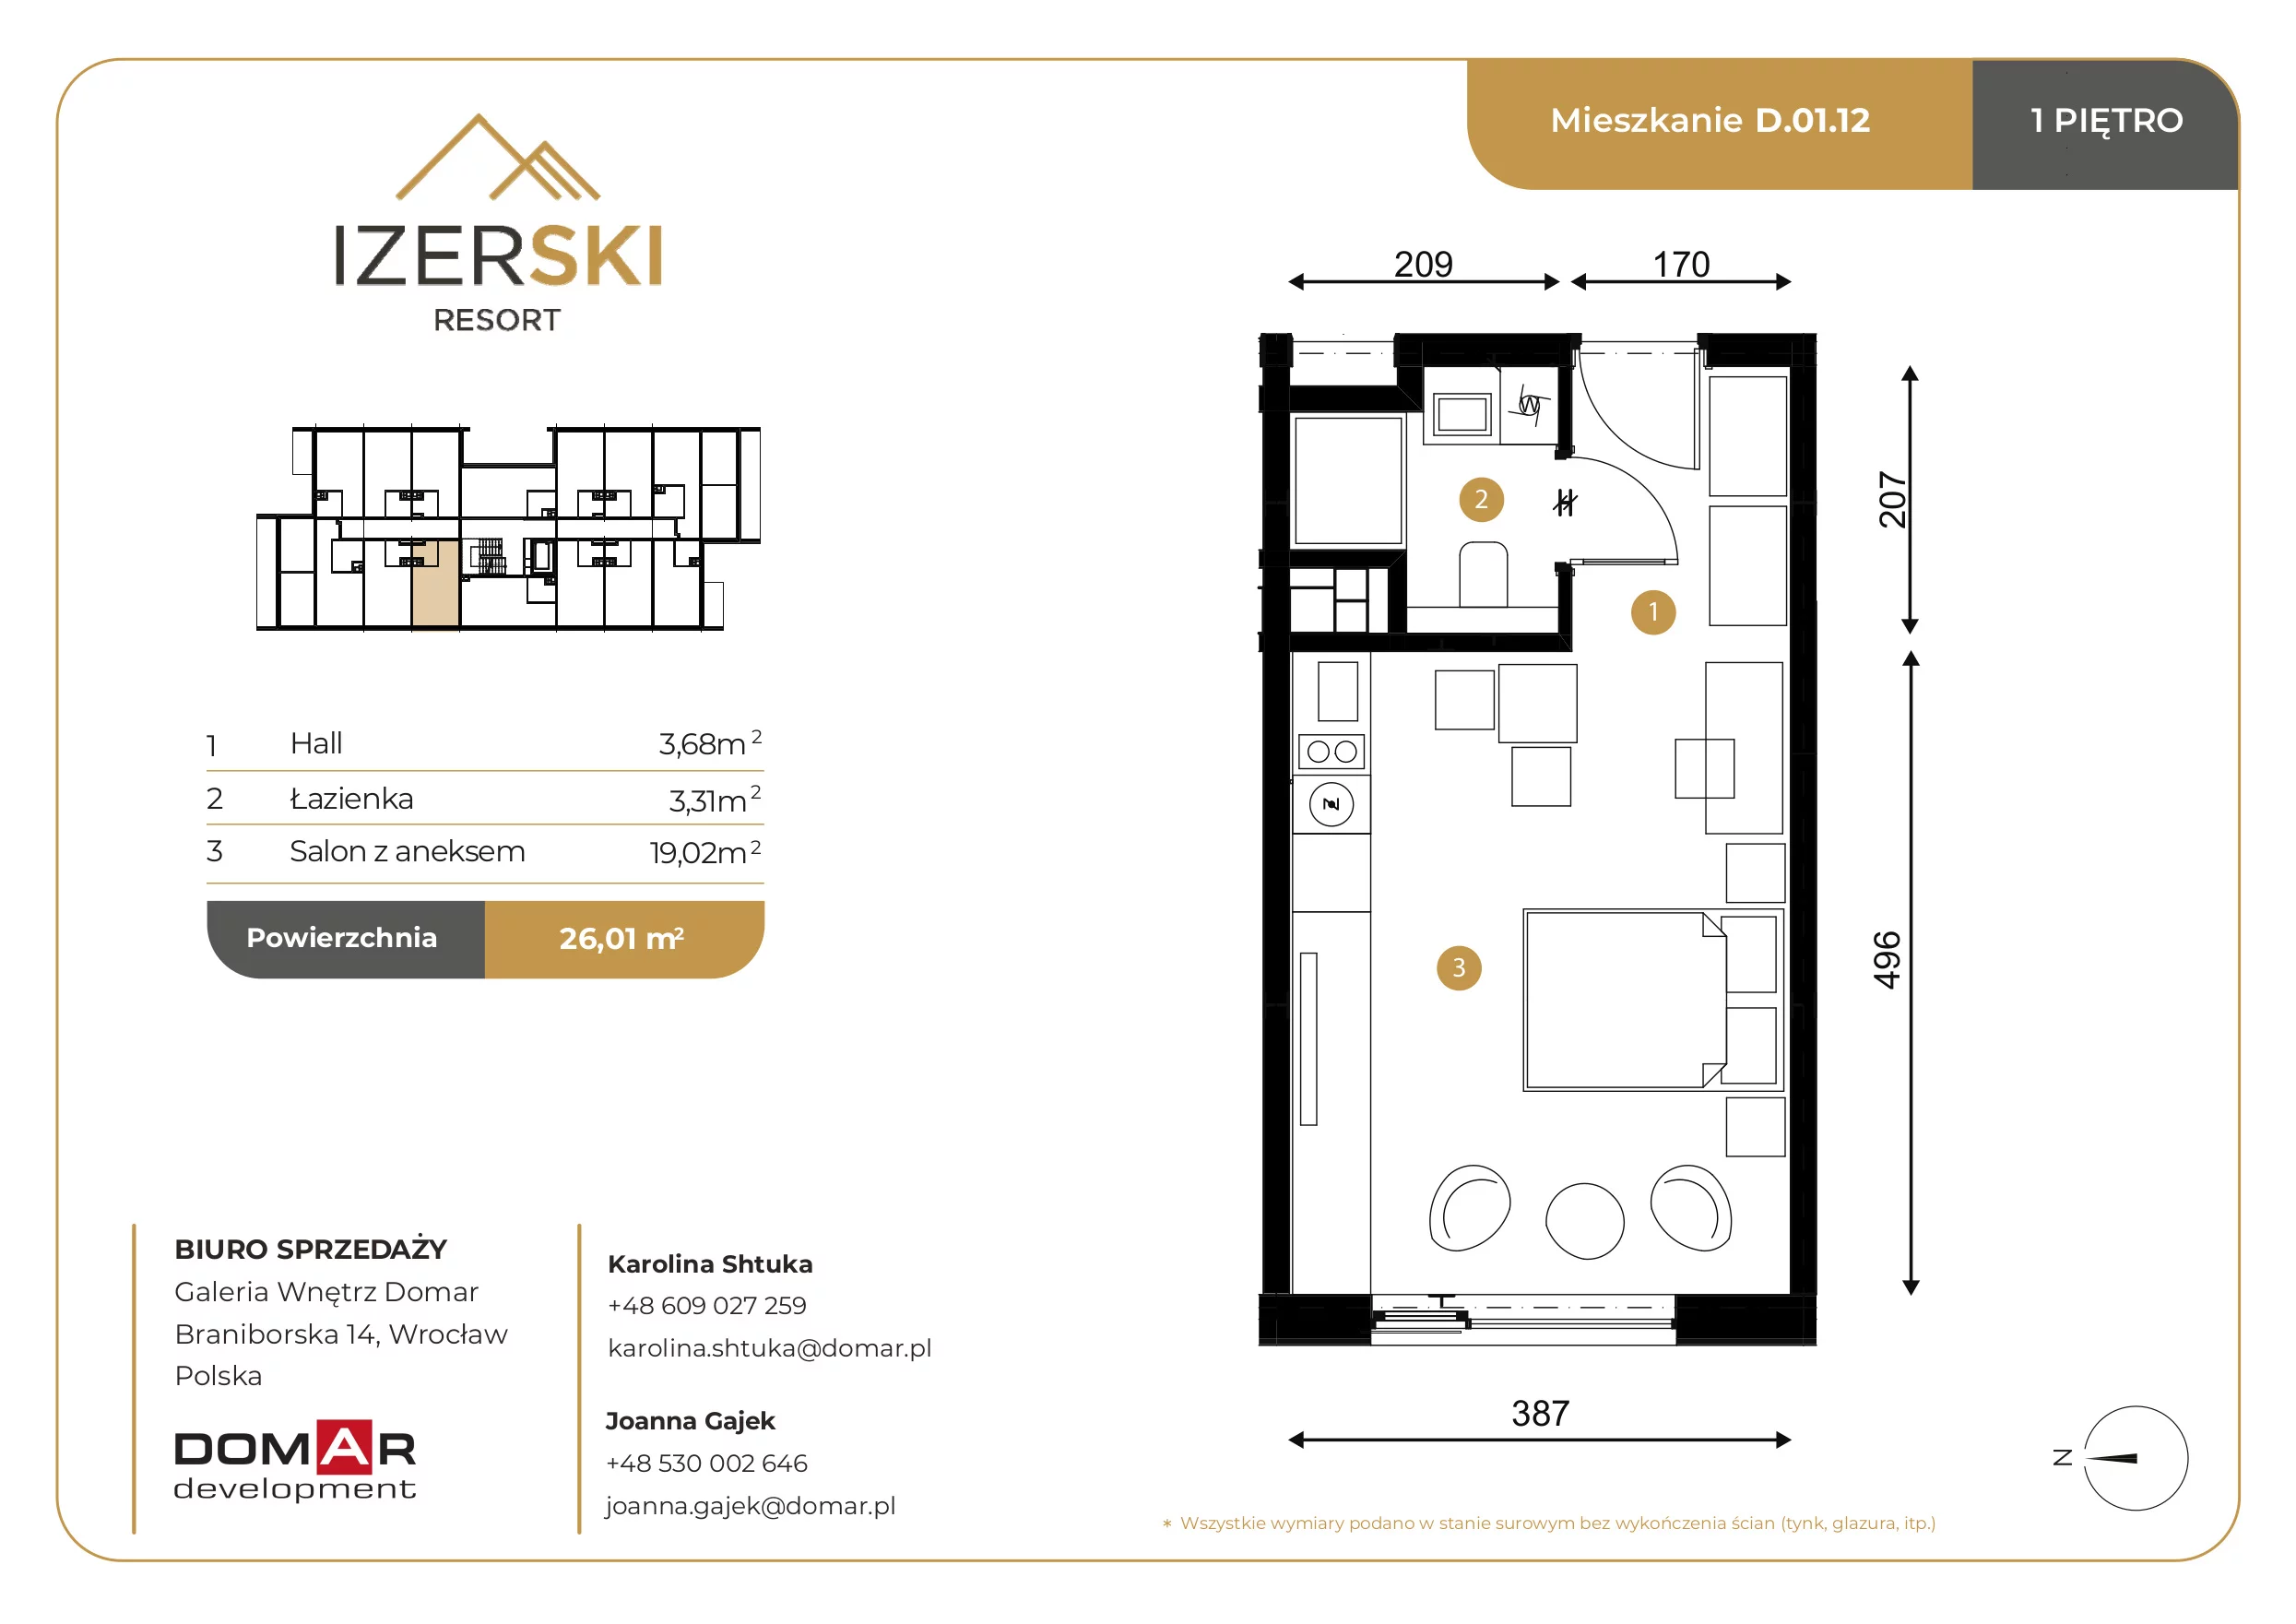 Apartament inwestycyjny 26,01 m², piętro 1, oferta nr D.01.12, IzerSKI Resort, Świeradów-Zdrój, ul. Jana Kilińskiego 2